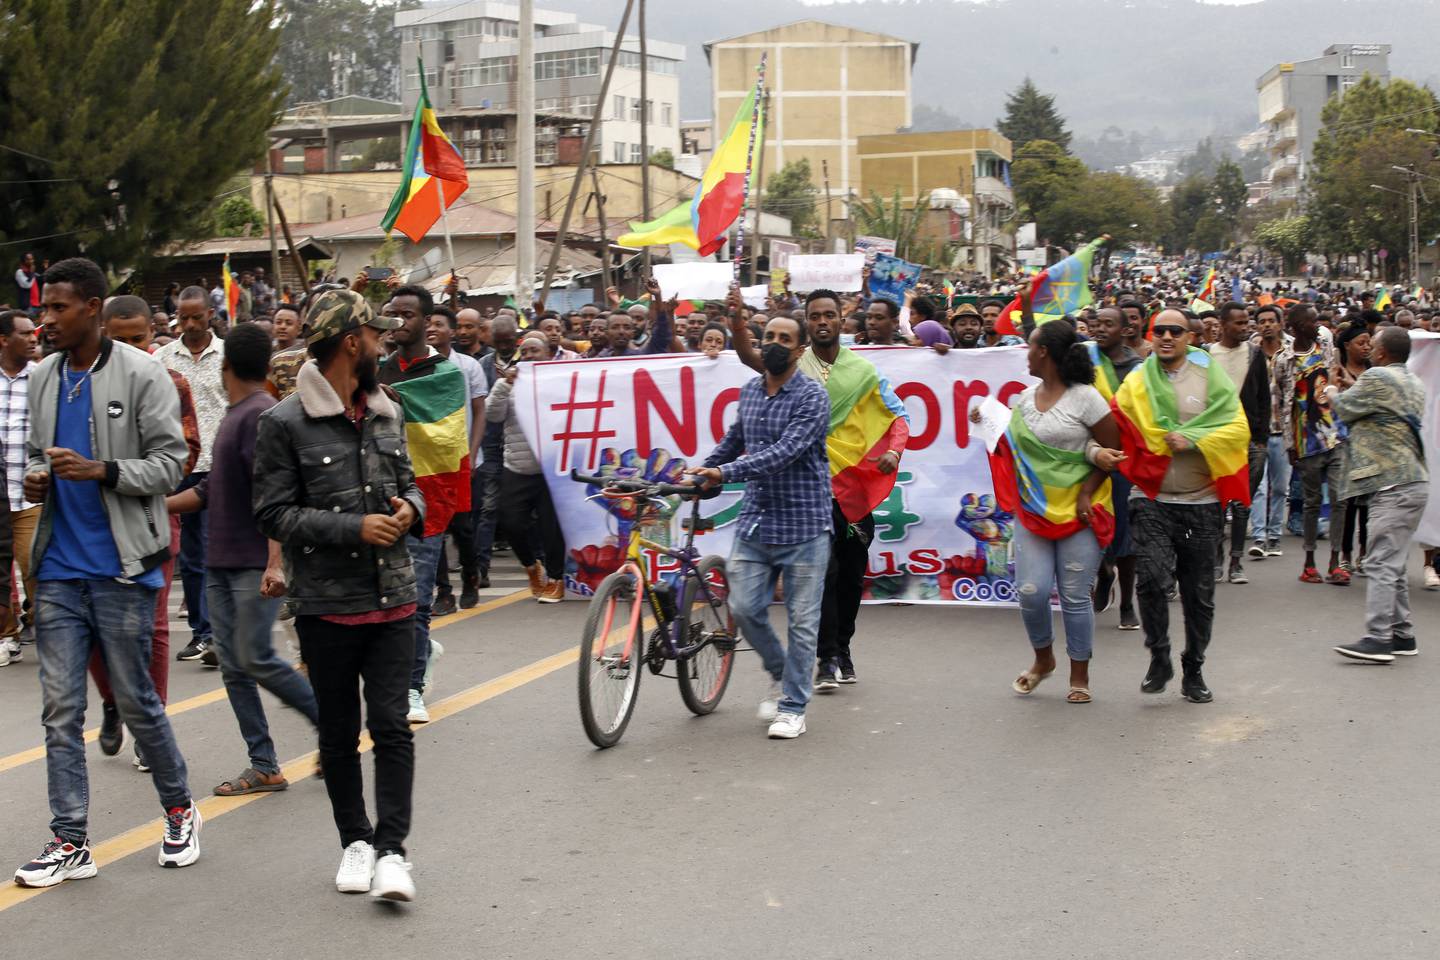 VED USAS AMBASADE: Tusenvis av mennesker demonstrerer utenfor den amerikanske amasade i Addis Abeba mot USAs støtte til TPLF. 25. november i 2021.